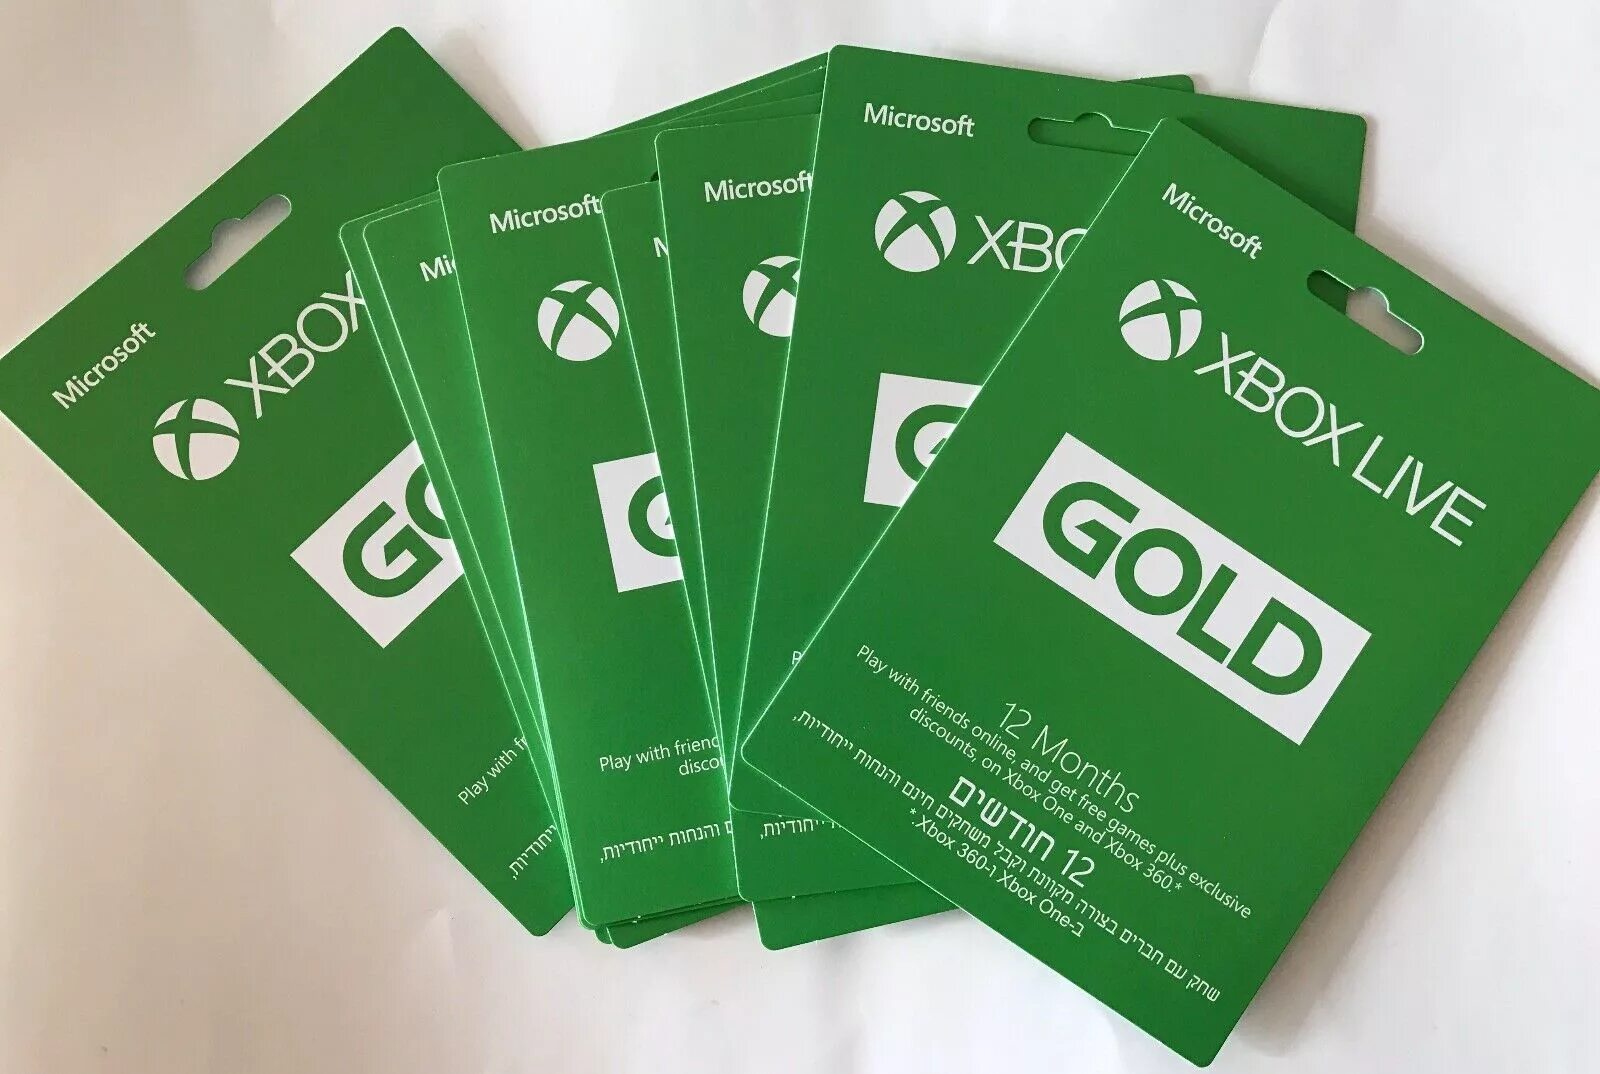 Xbox Live Gold. Подписка Xbox Live Gold. Подписка на Xbox one. Хбокс лайв. Купить месяц подписки xbox